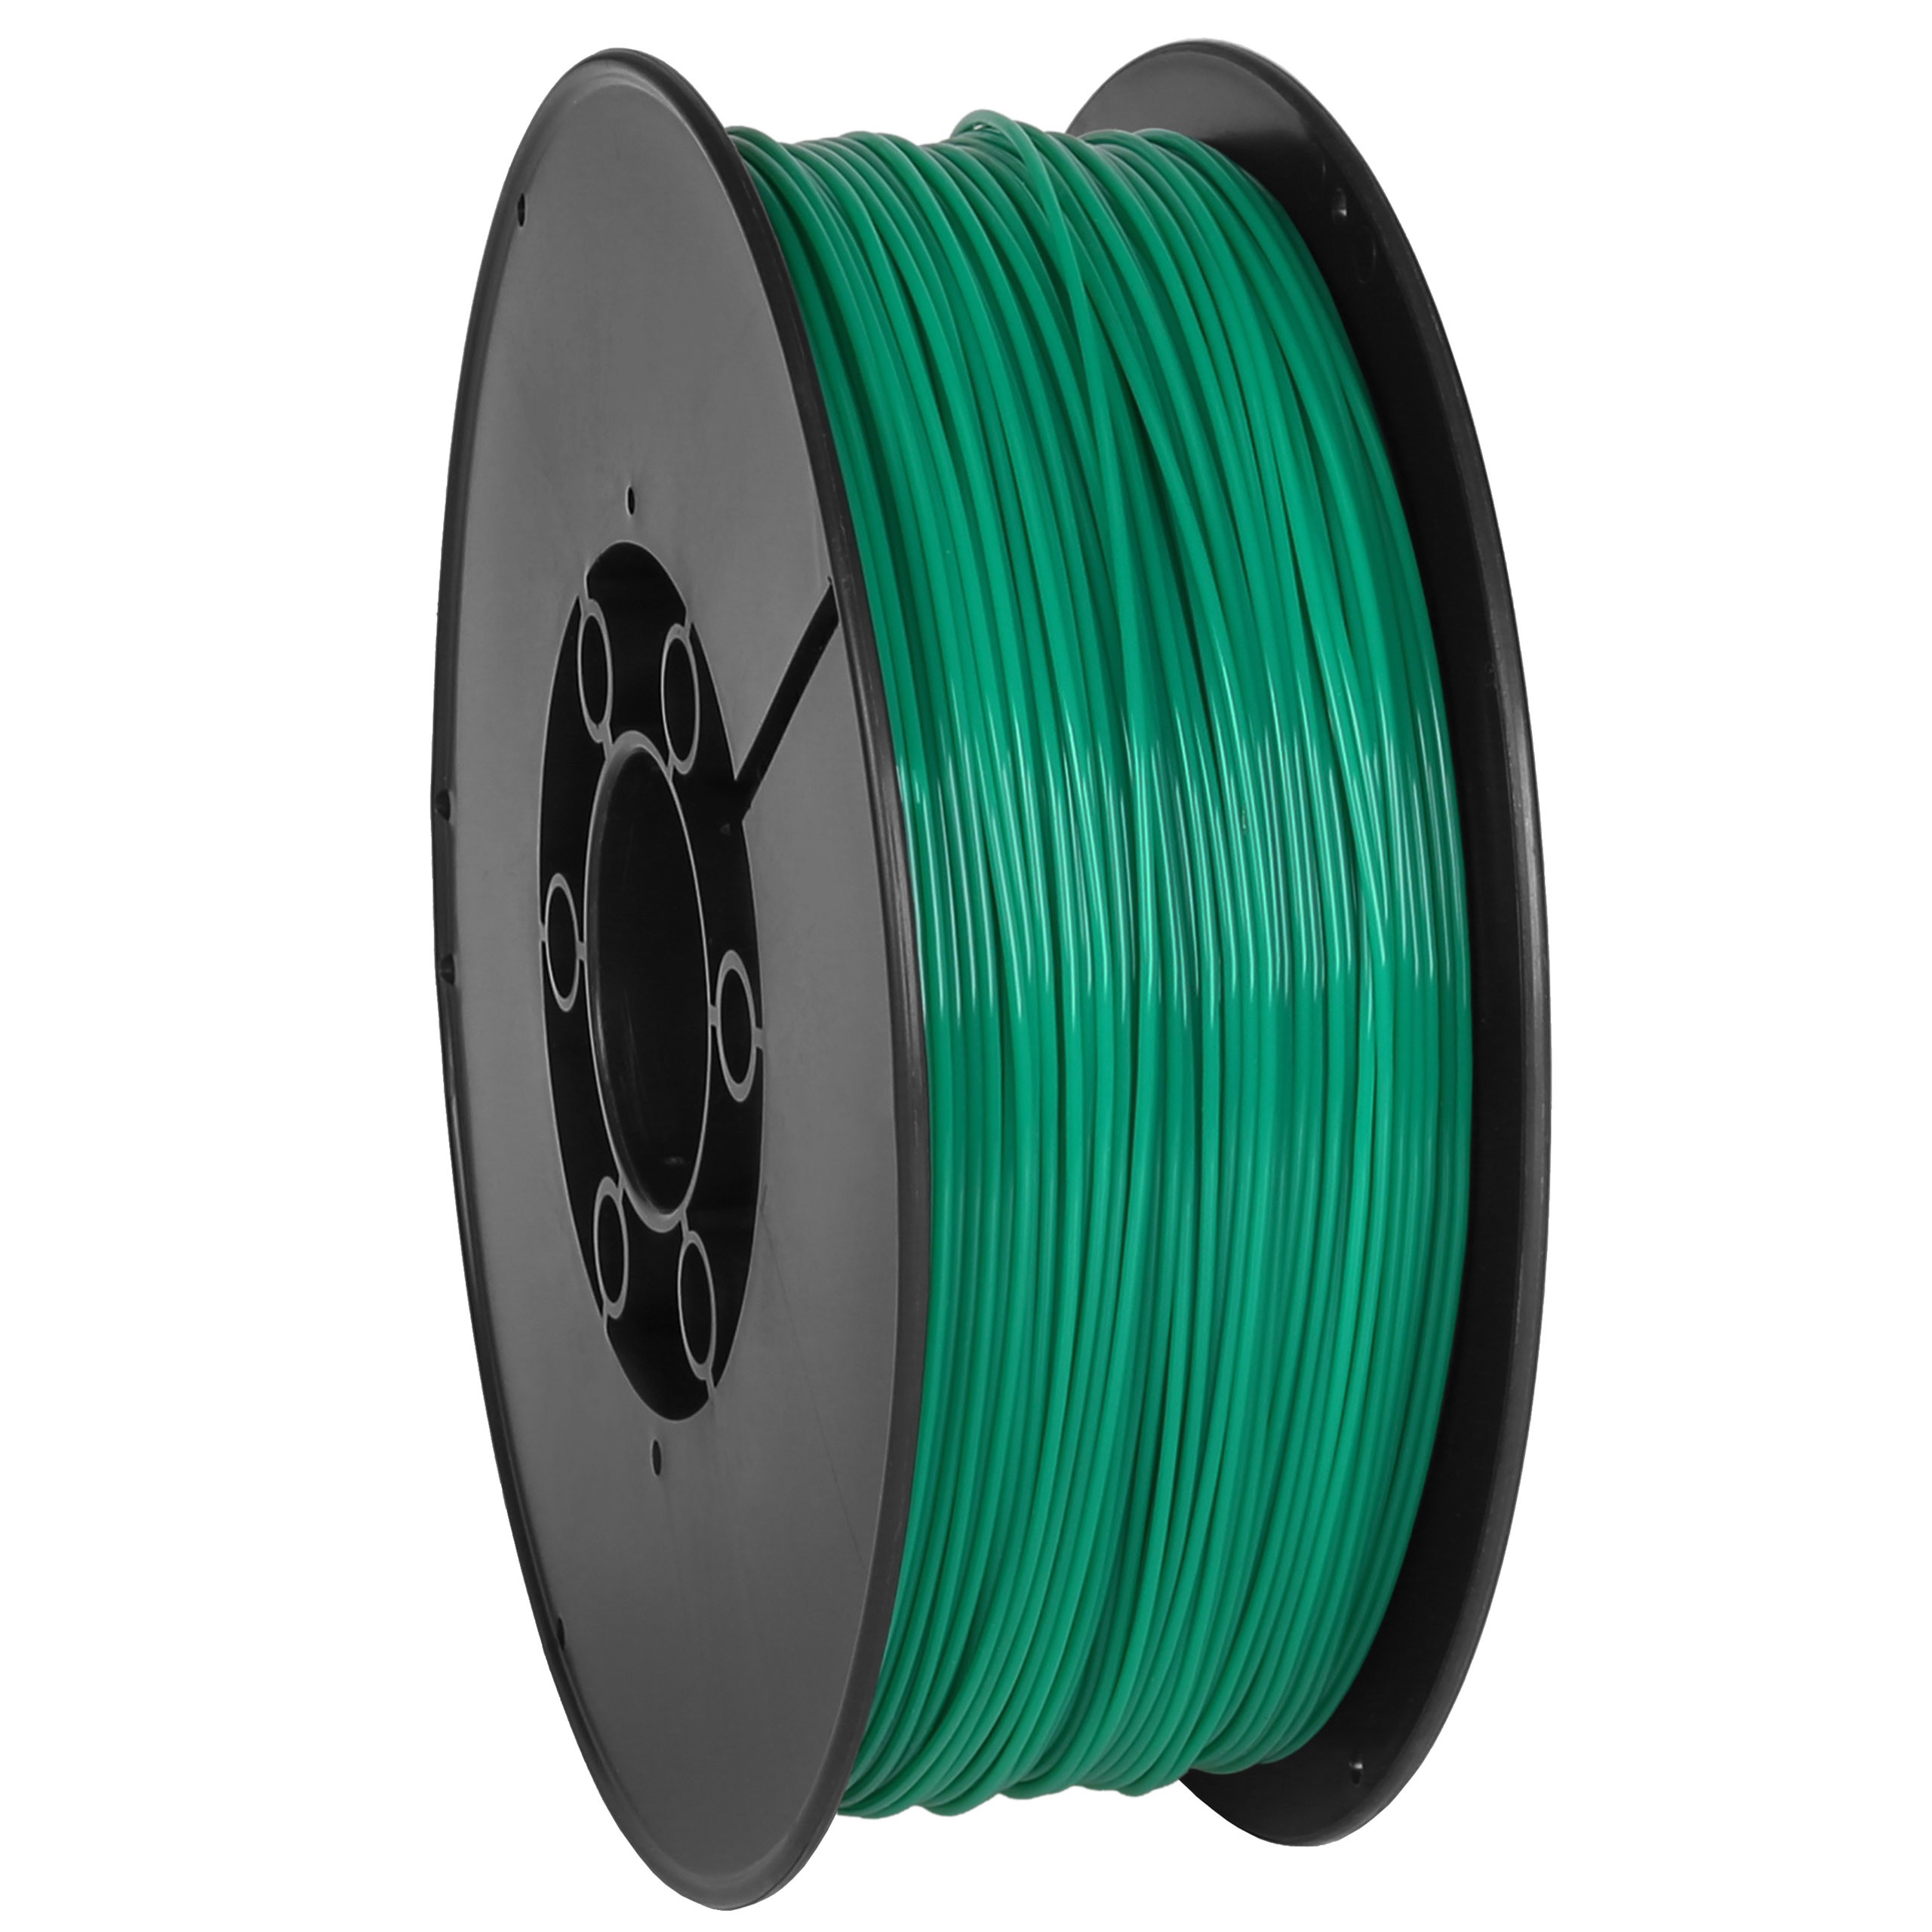 Filamento PLA verde 1,75 mm (filo) per stampanti 3D MADE IN EU